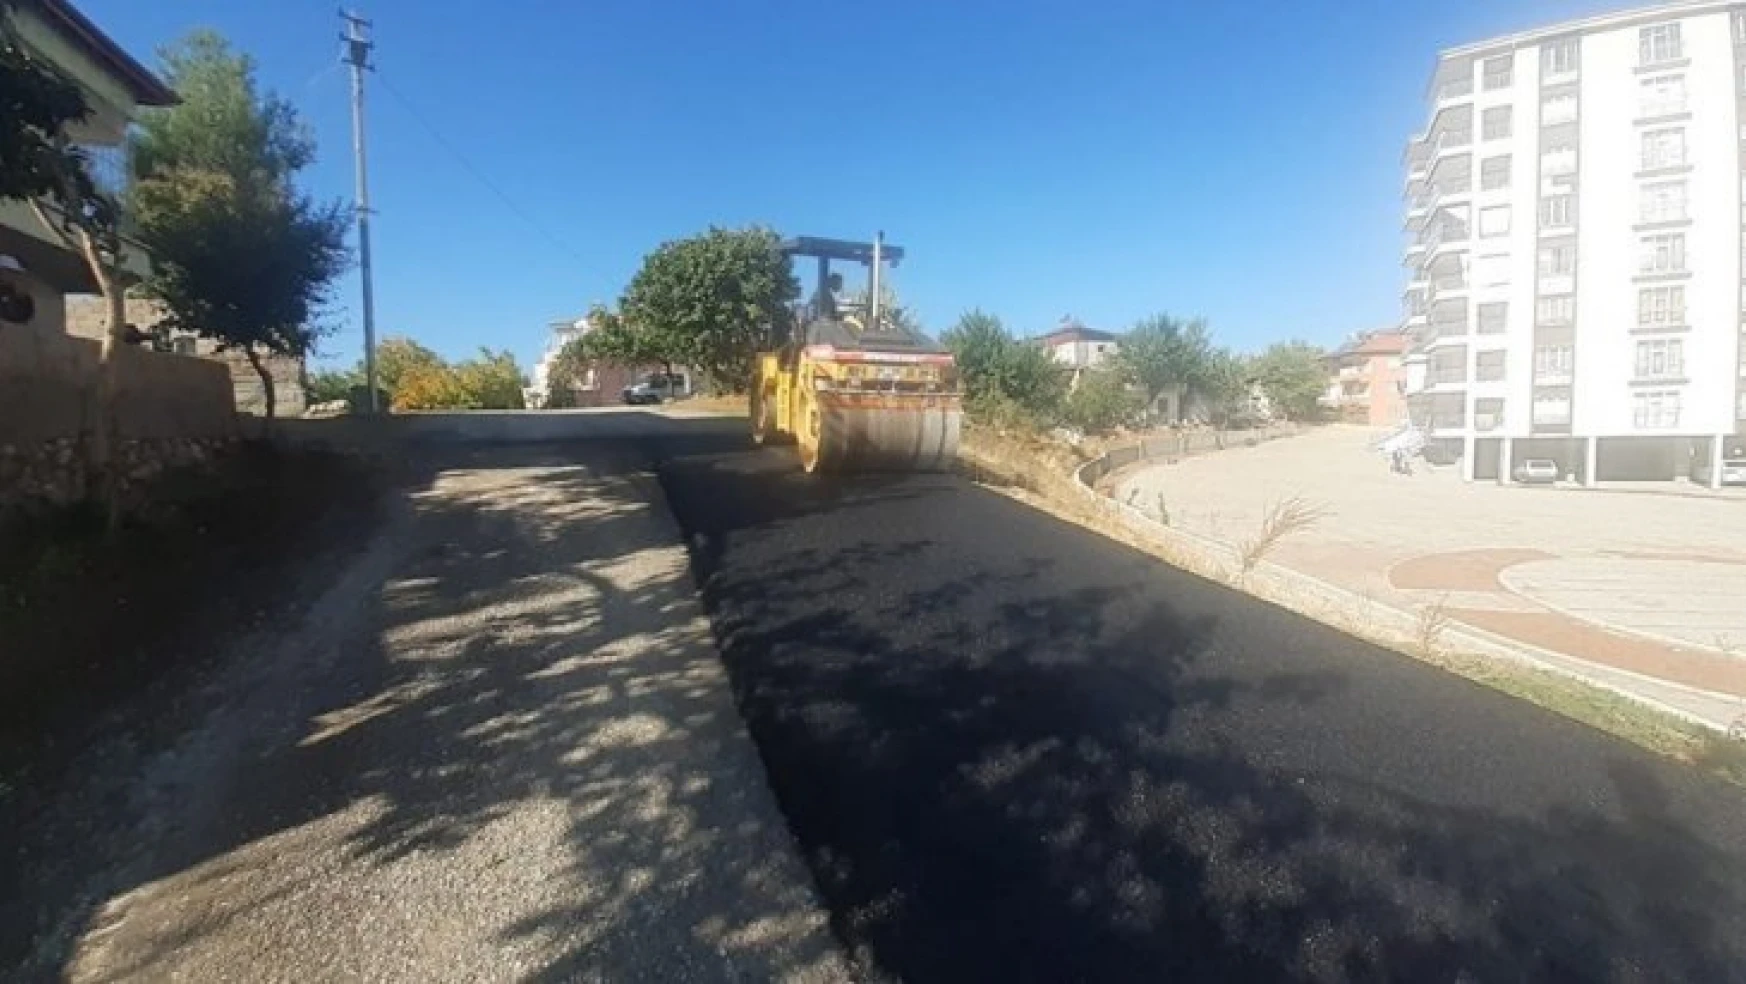 Gölbaşı ilçesinde asfalt yapım çalışmaları devam ediyor